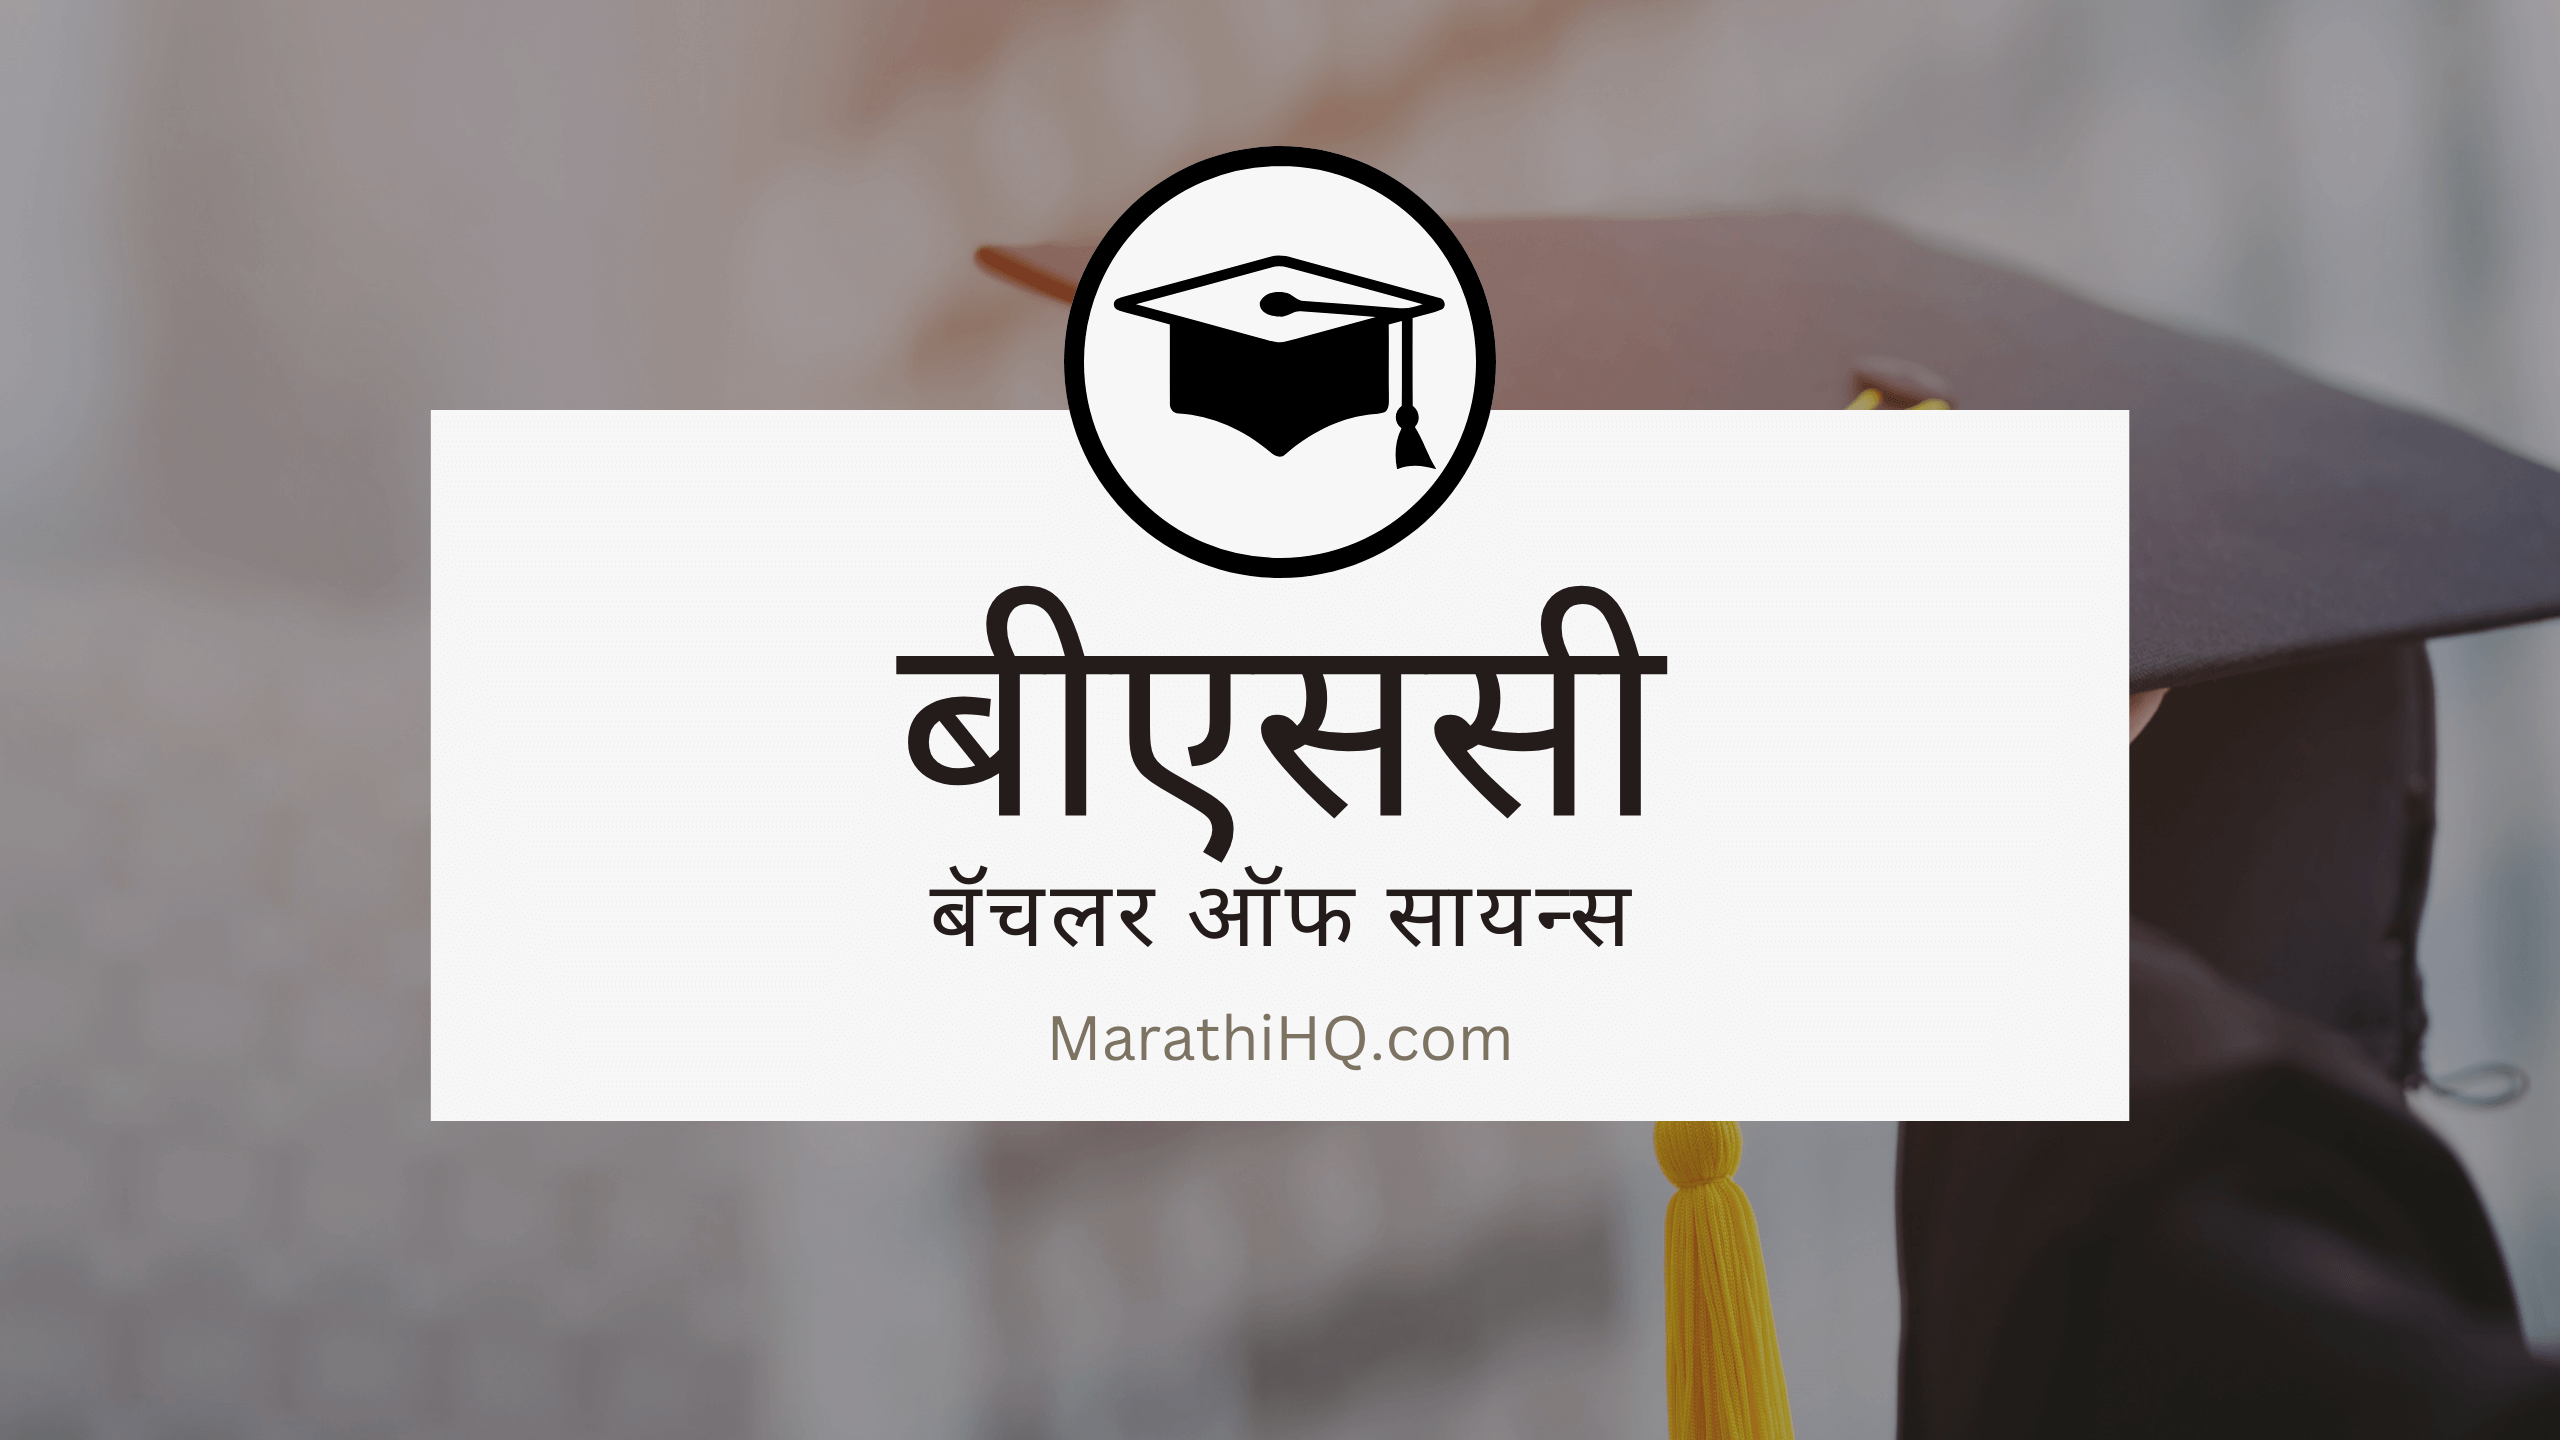 बीएससी – अभ्यासक्रम, भविष्यातील संधी | BSc Course Information in Marathi